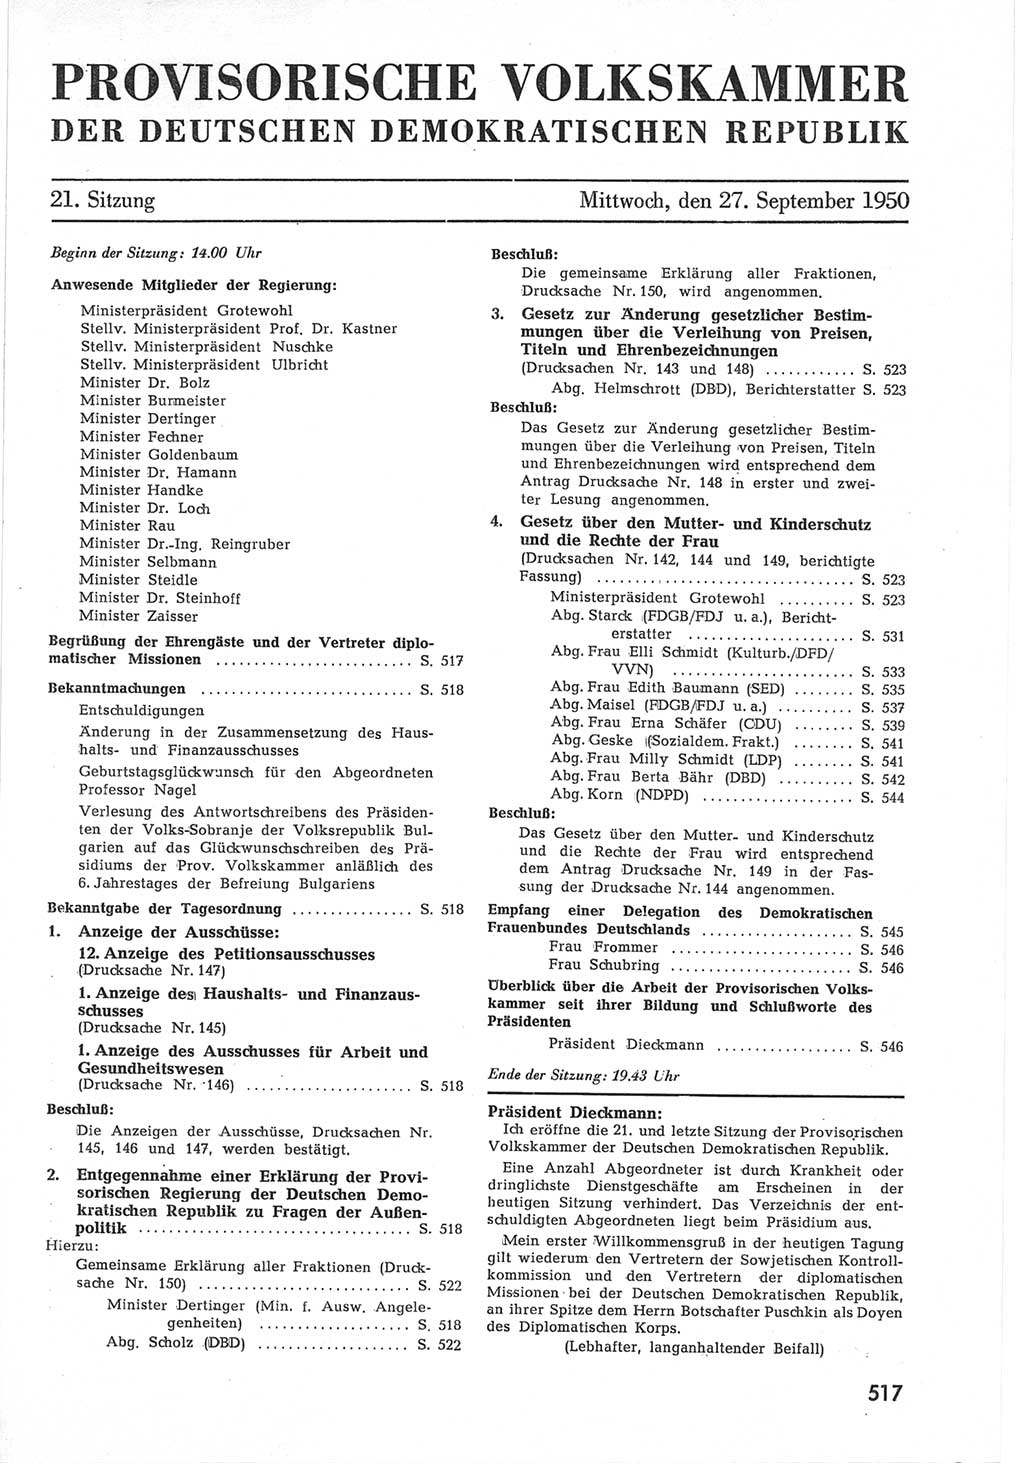 Provisorische Volkskammer (VK) der Deutschen Demokratischen Republik (DDR) 1949-1950, Dokument 535 (Prov. VK DDR 1949-1950, Dok. 535)